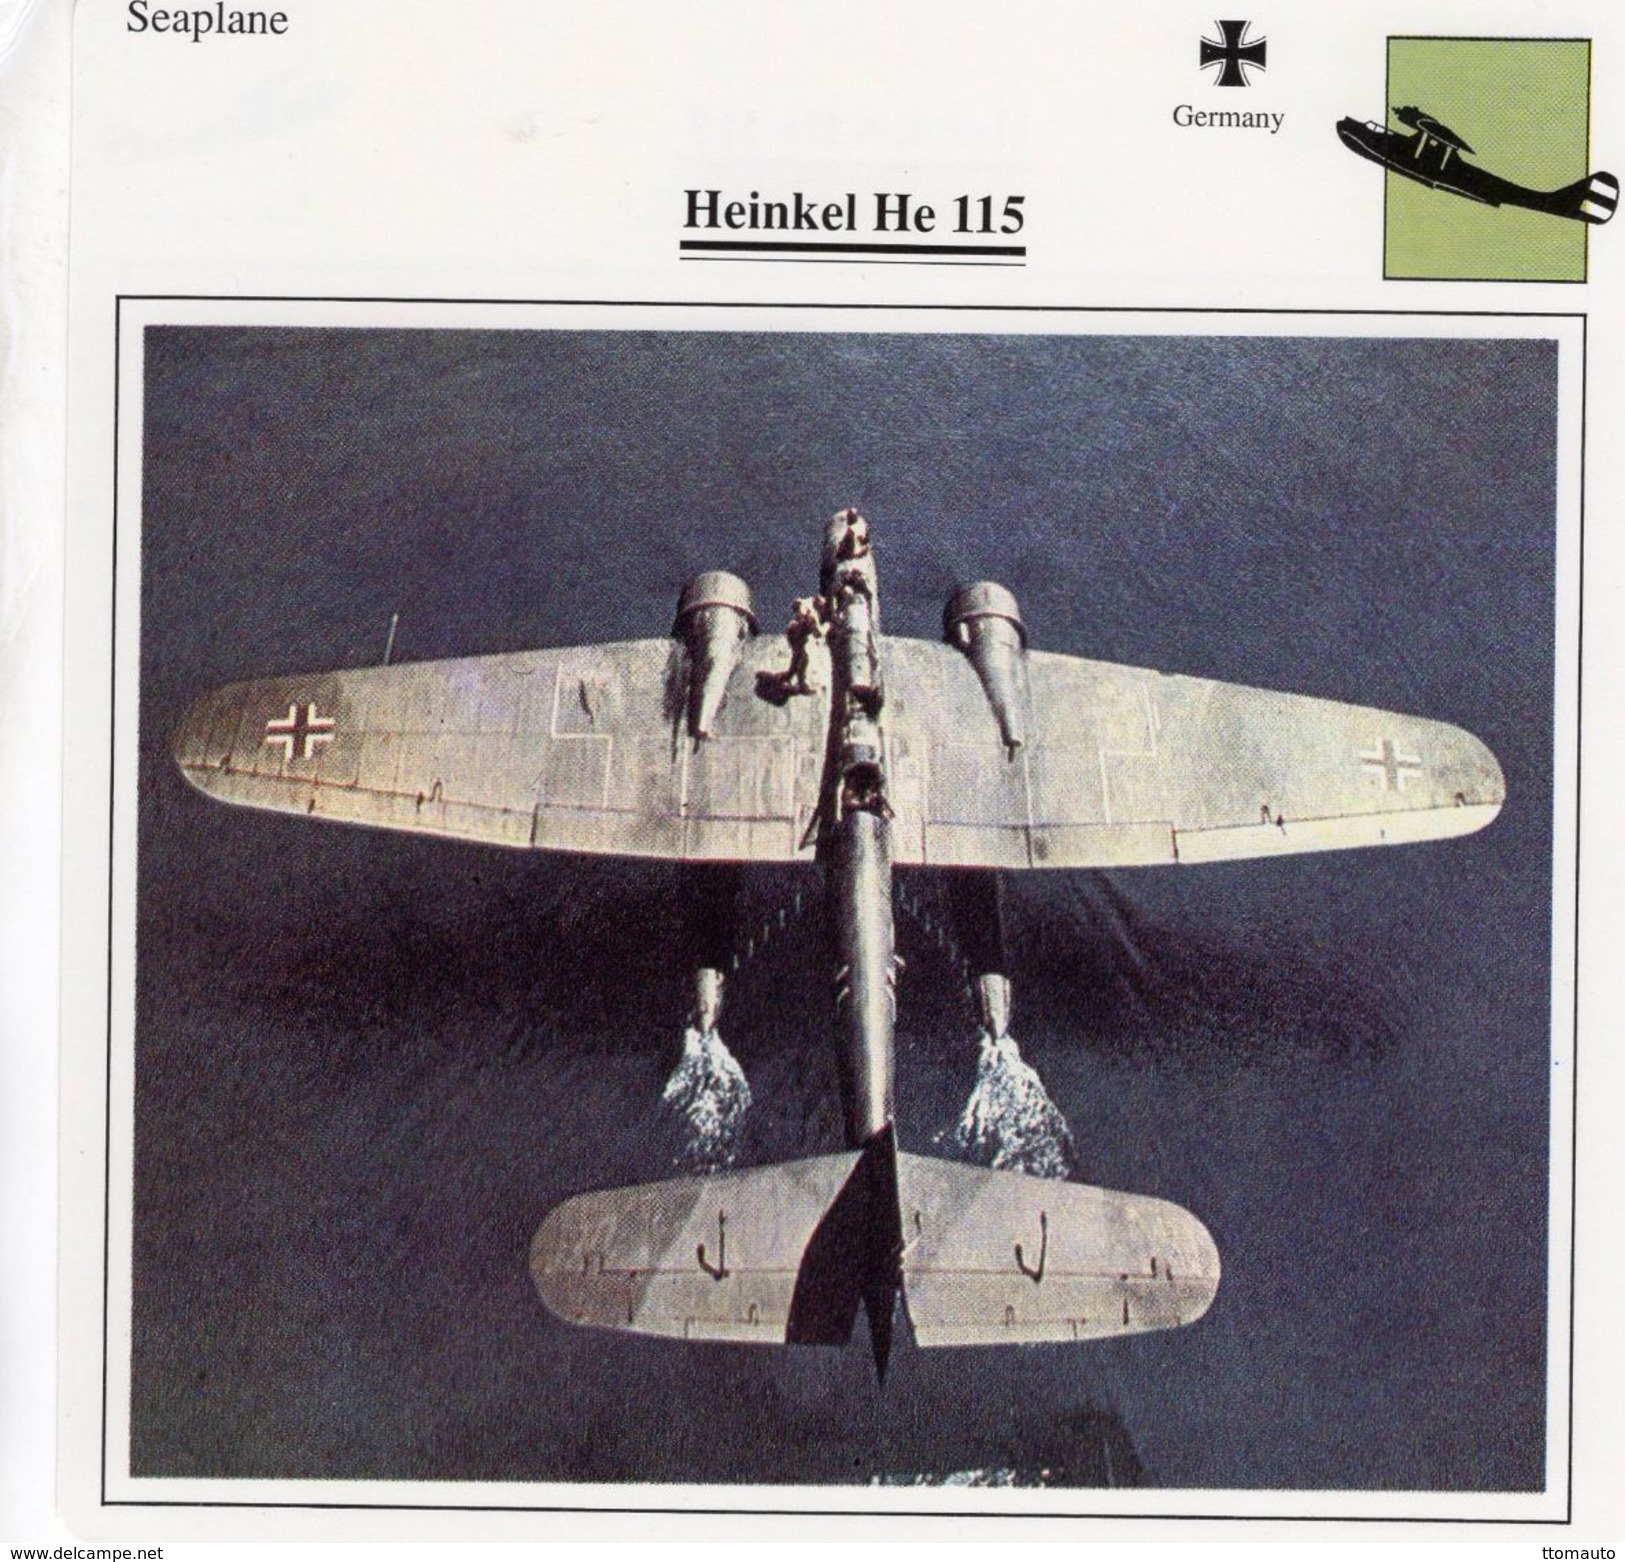 Fiche Techique  -  Hydravion  Seaplane  (Germany)  -   HEINKEL HE 115 - 1939-1945: 2nd War